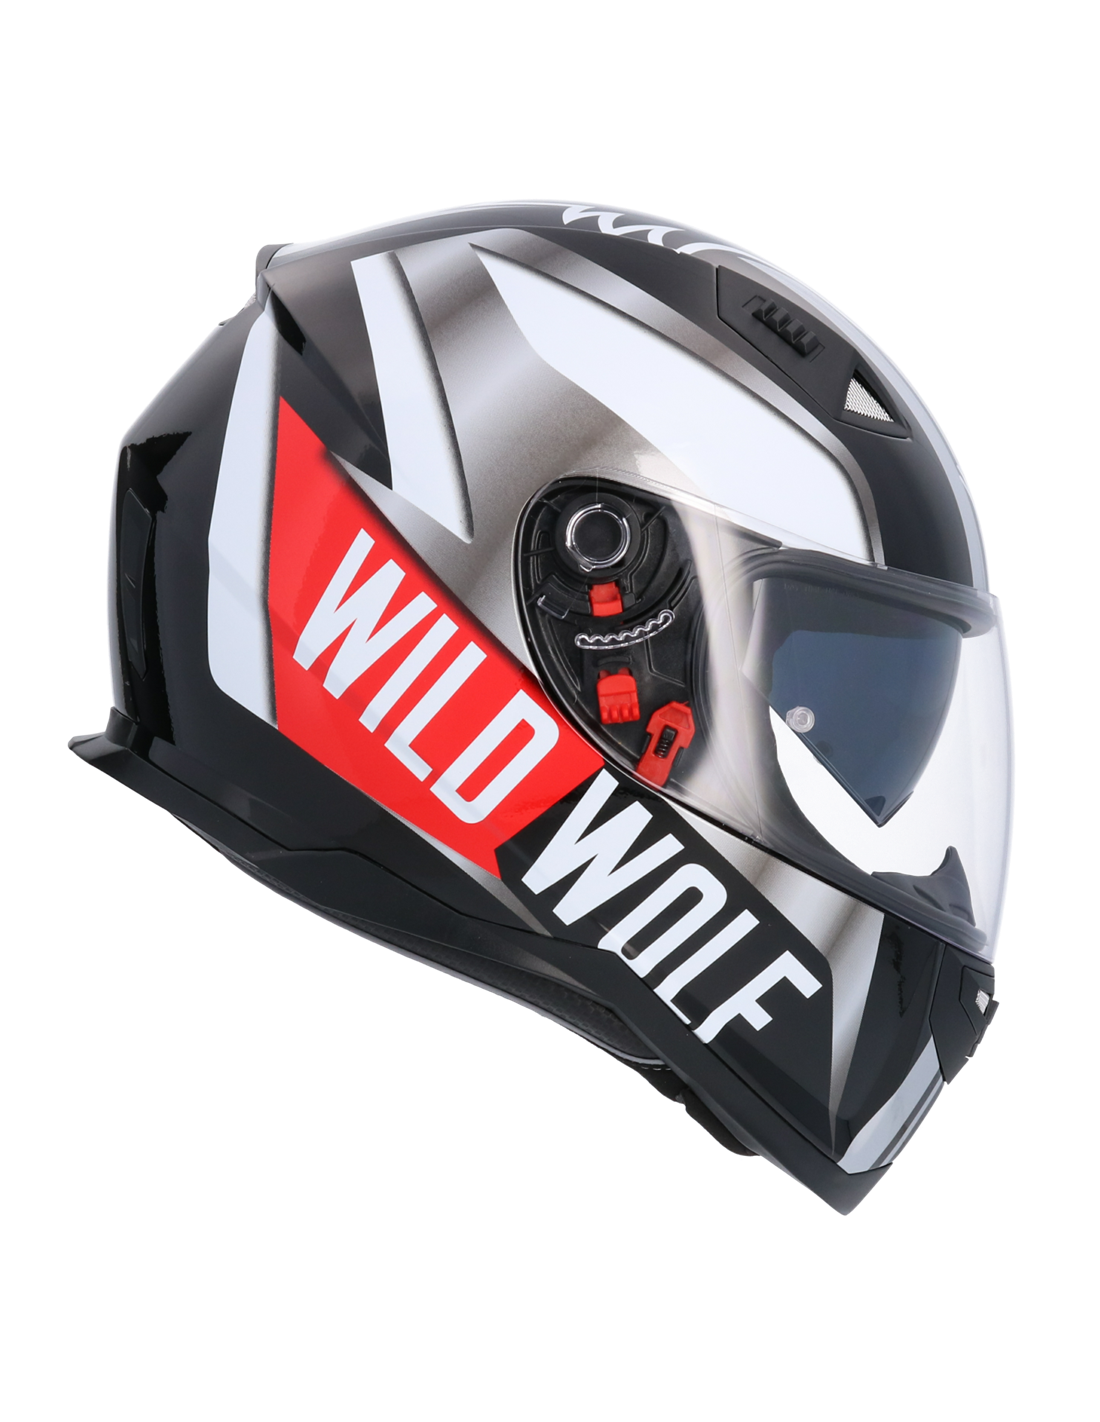 Casco De Moto Integral Ece Homologado Wildwolf Sh881 Edicion Limitada Negro Casco De Moto Doble